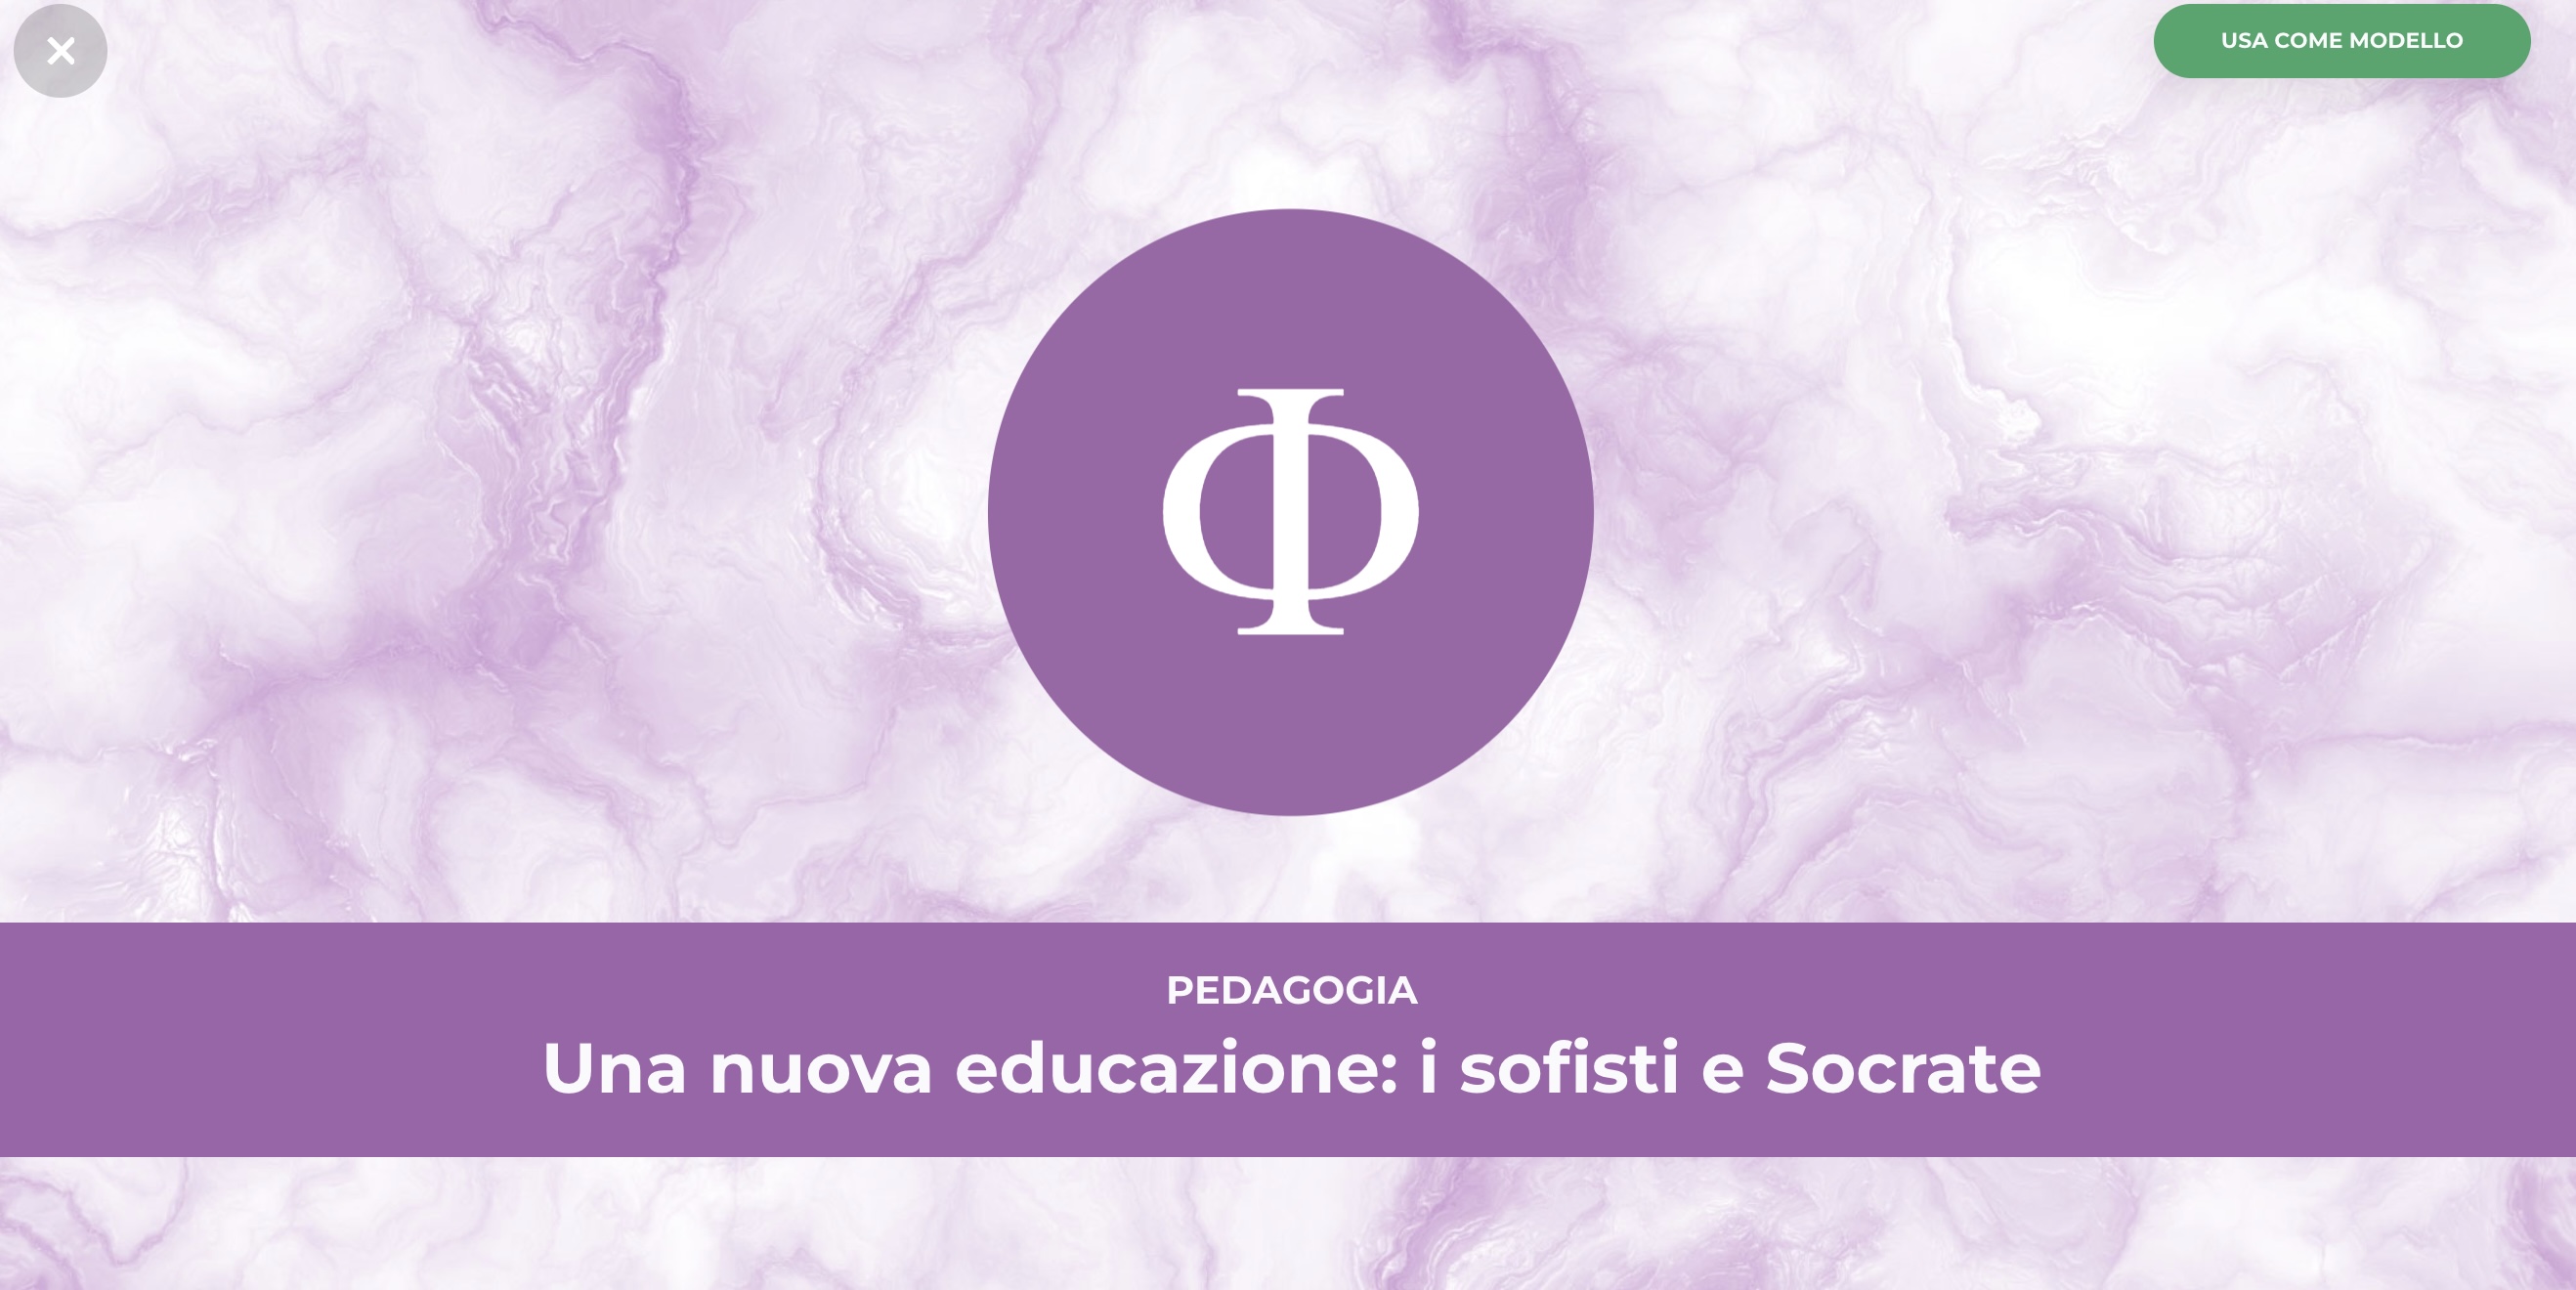 Una nuova educazione: i sofisti e Socrate